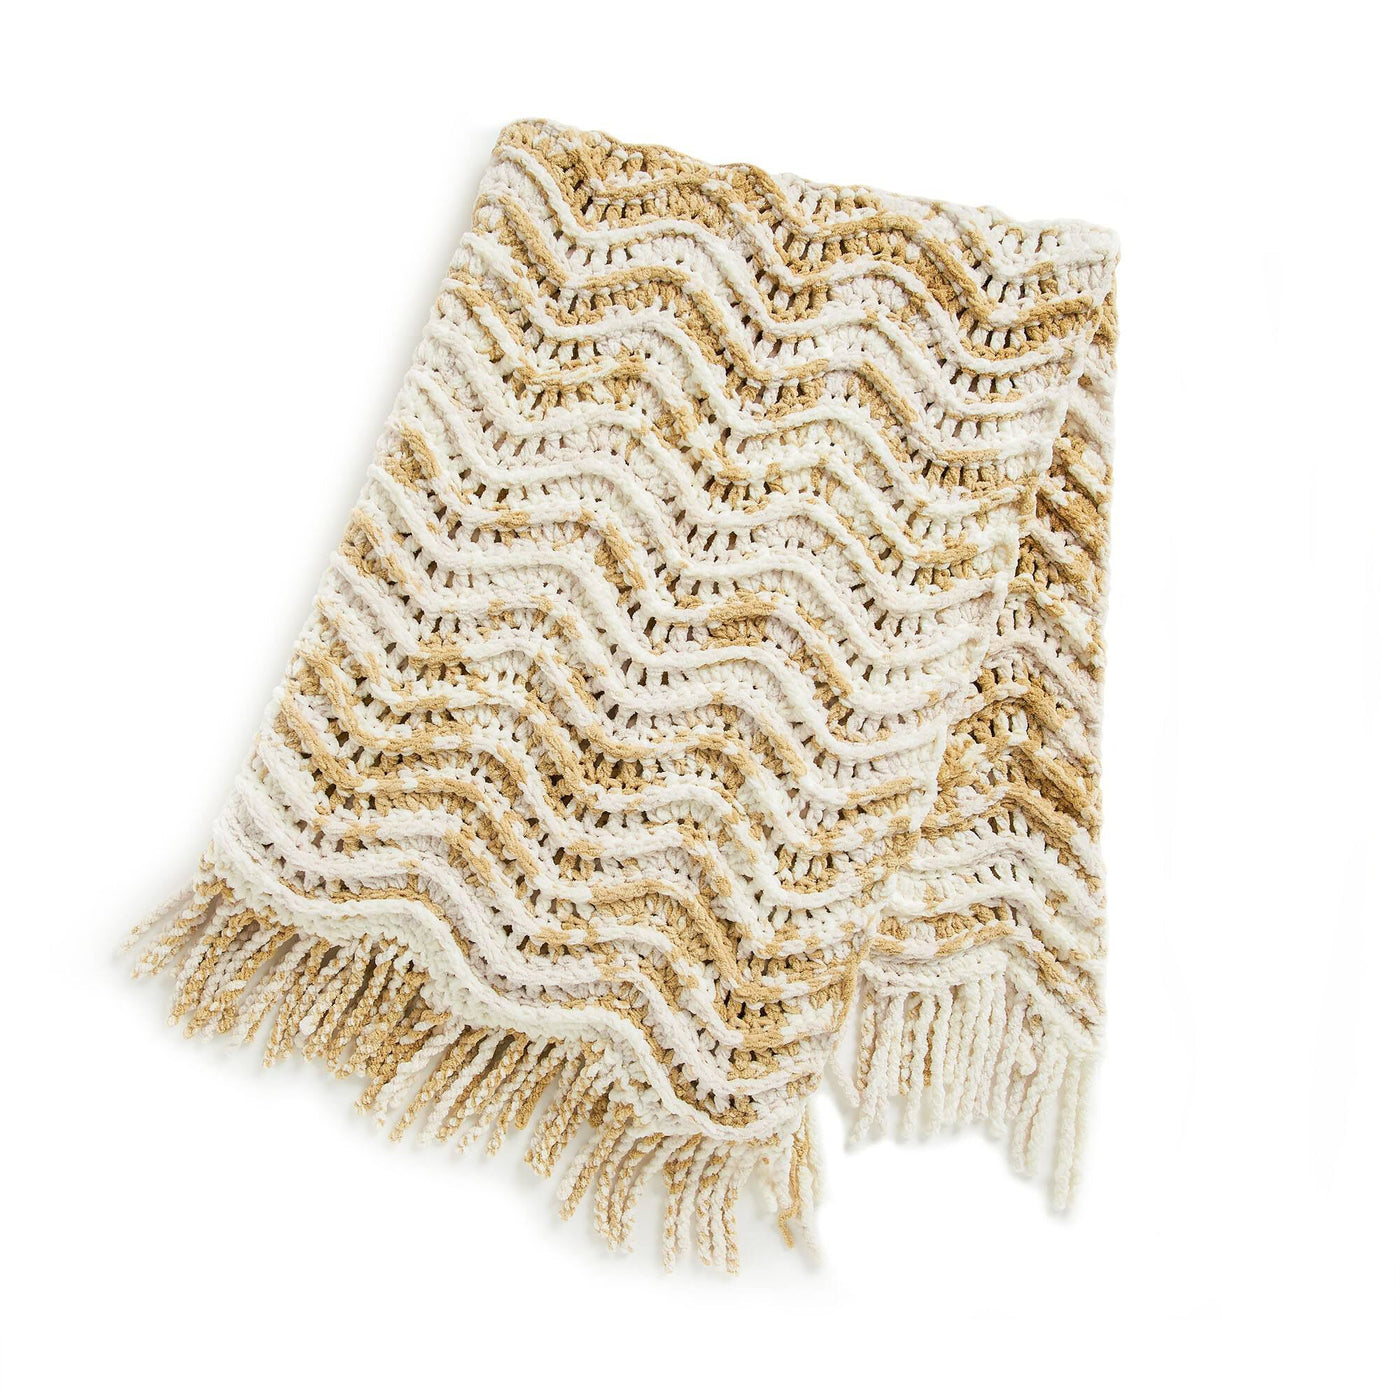 CROCHET PATTERN DOWNLOAD - Bernat Tie Dye-ish Big Splash Crochet Blanket